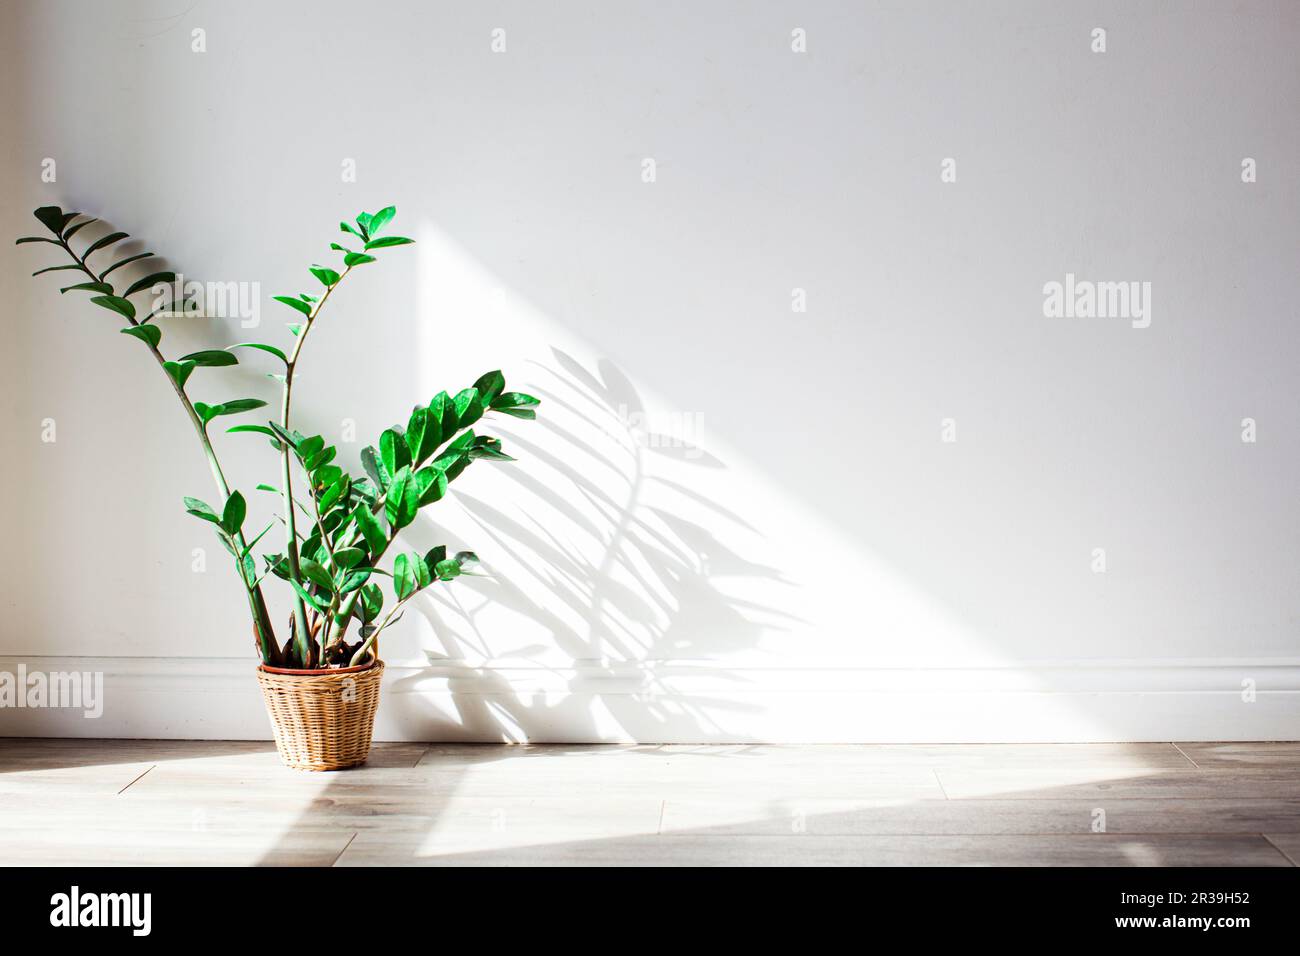 Schatten des grünen Zamioculcas-Busches an der Wand. Stockfoto